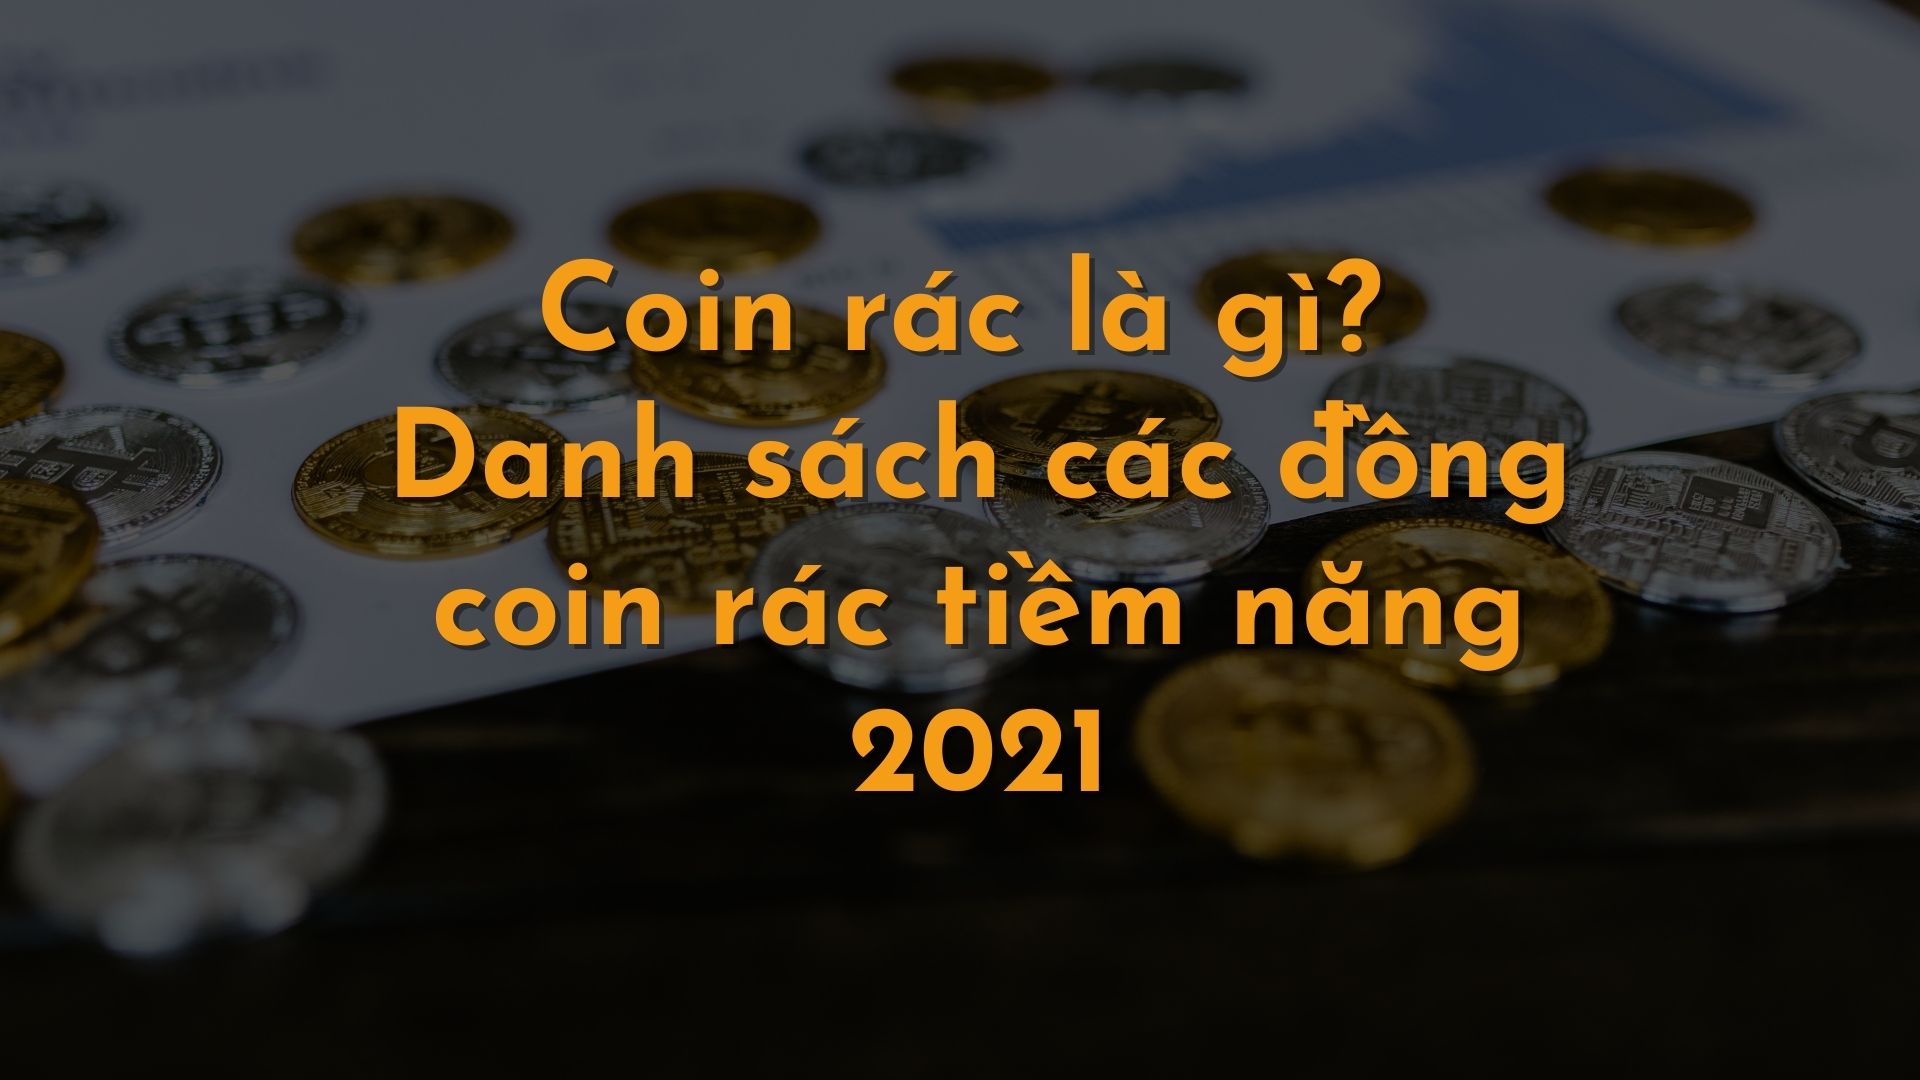 Coin rác là gì? Danh sách các đồng coin rác tiềm năng 2022